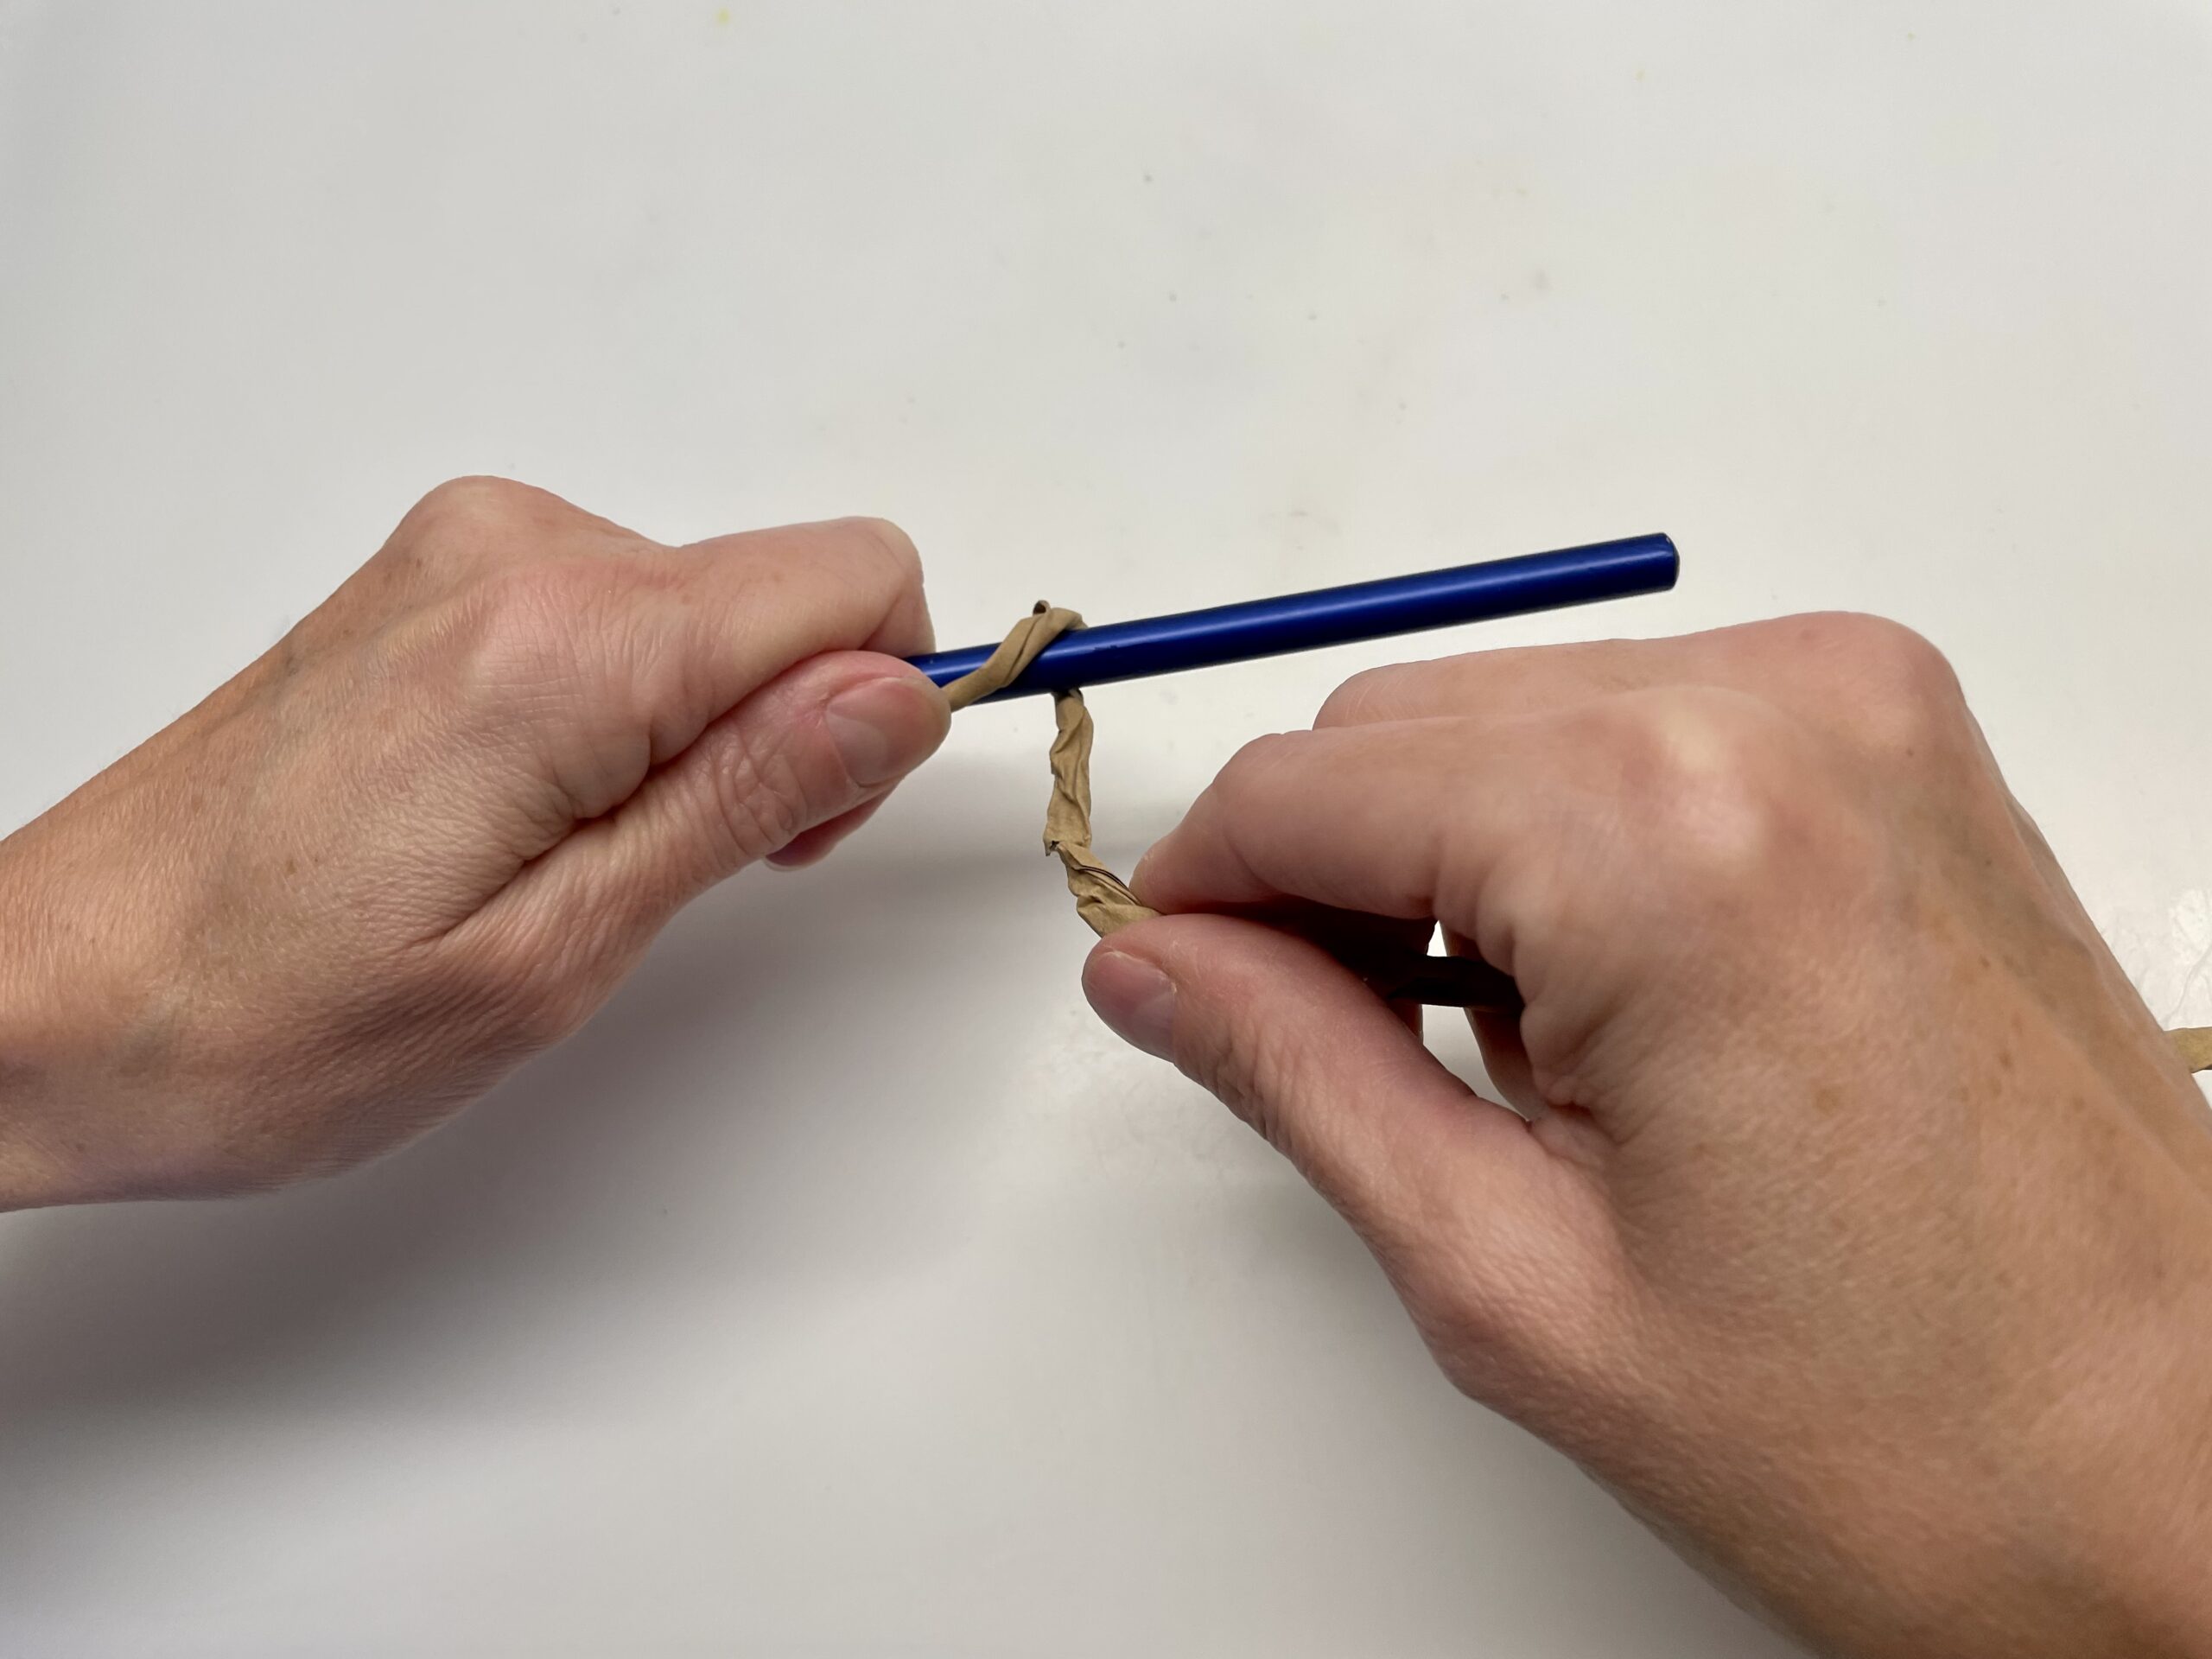 Bild zum Schritt 21 für das Bastel- und DIY-Abenteuer für Kinder: 'Wickelt den Papierdraht eng um den Stift.'